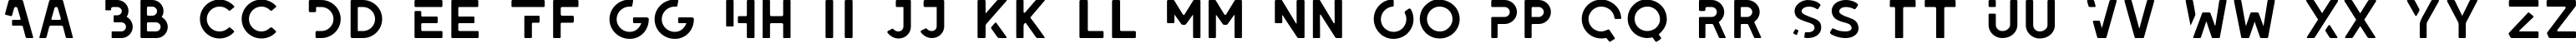 Пример написания английского алфавита шрифтом LEIXO DEMO